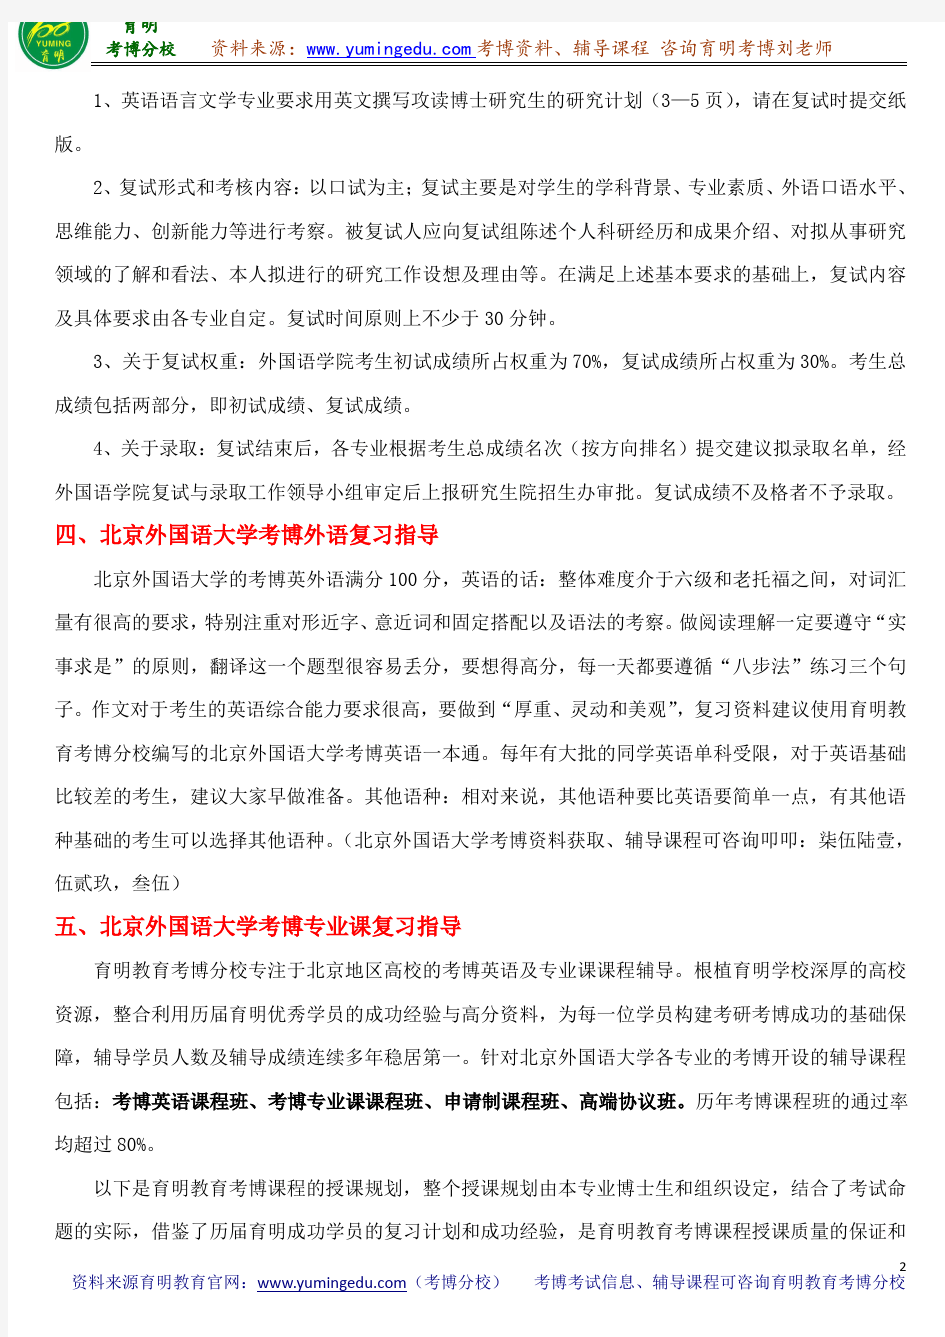 北京外国语大学普通语言学考博参考书目导师笔记重点